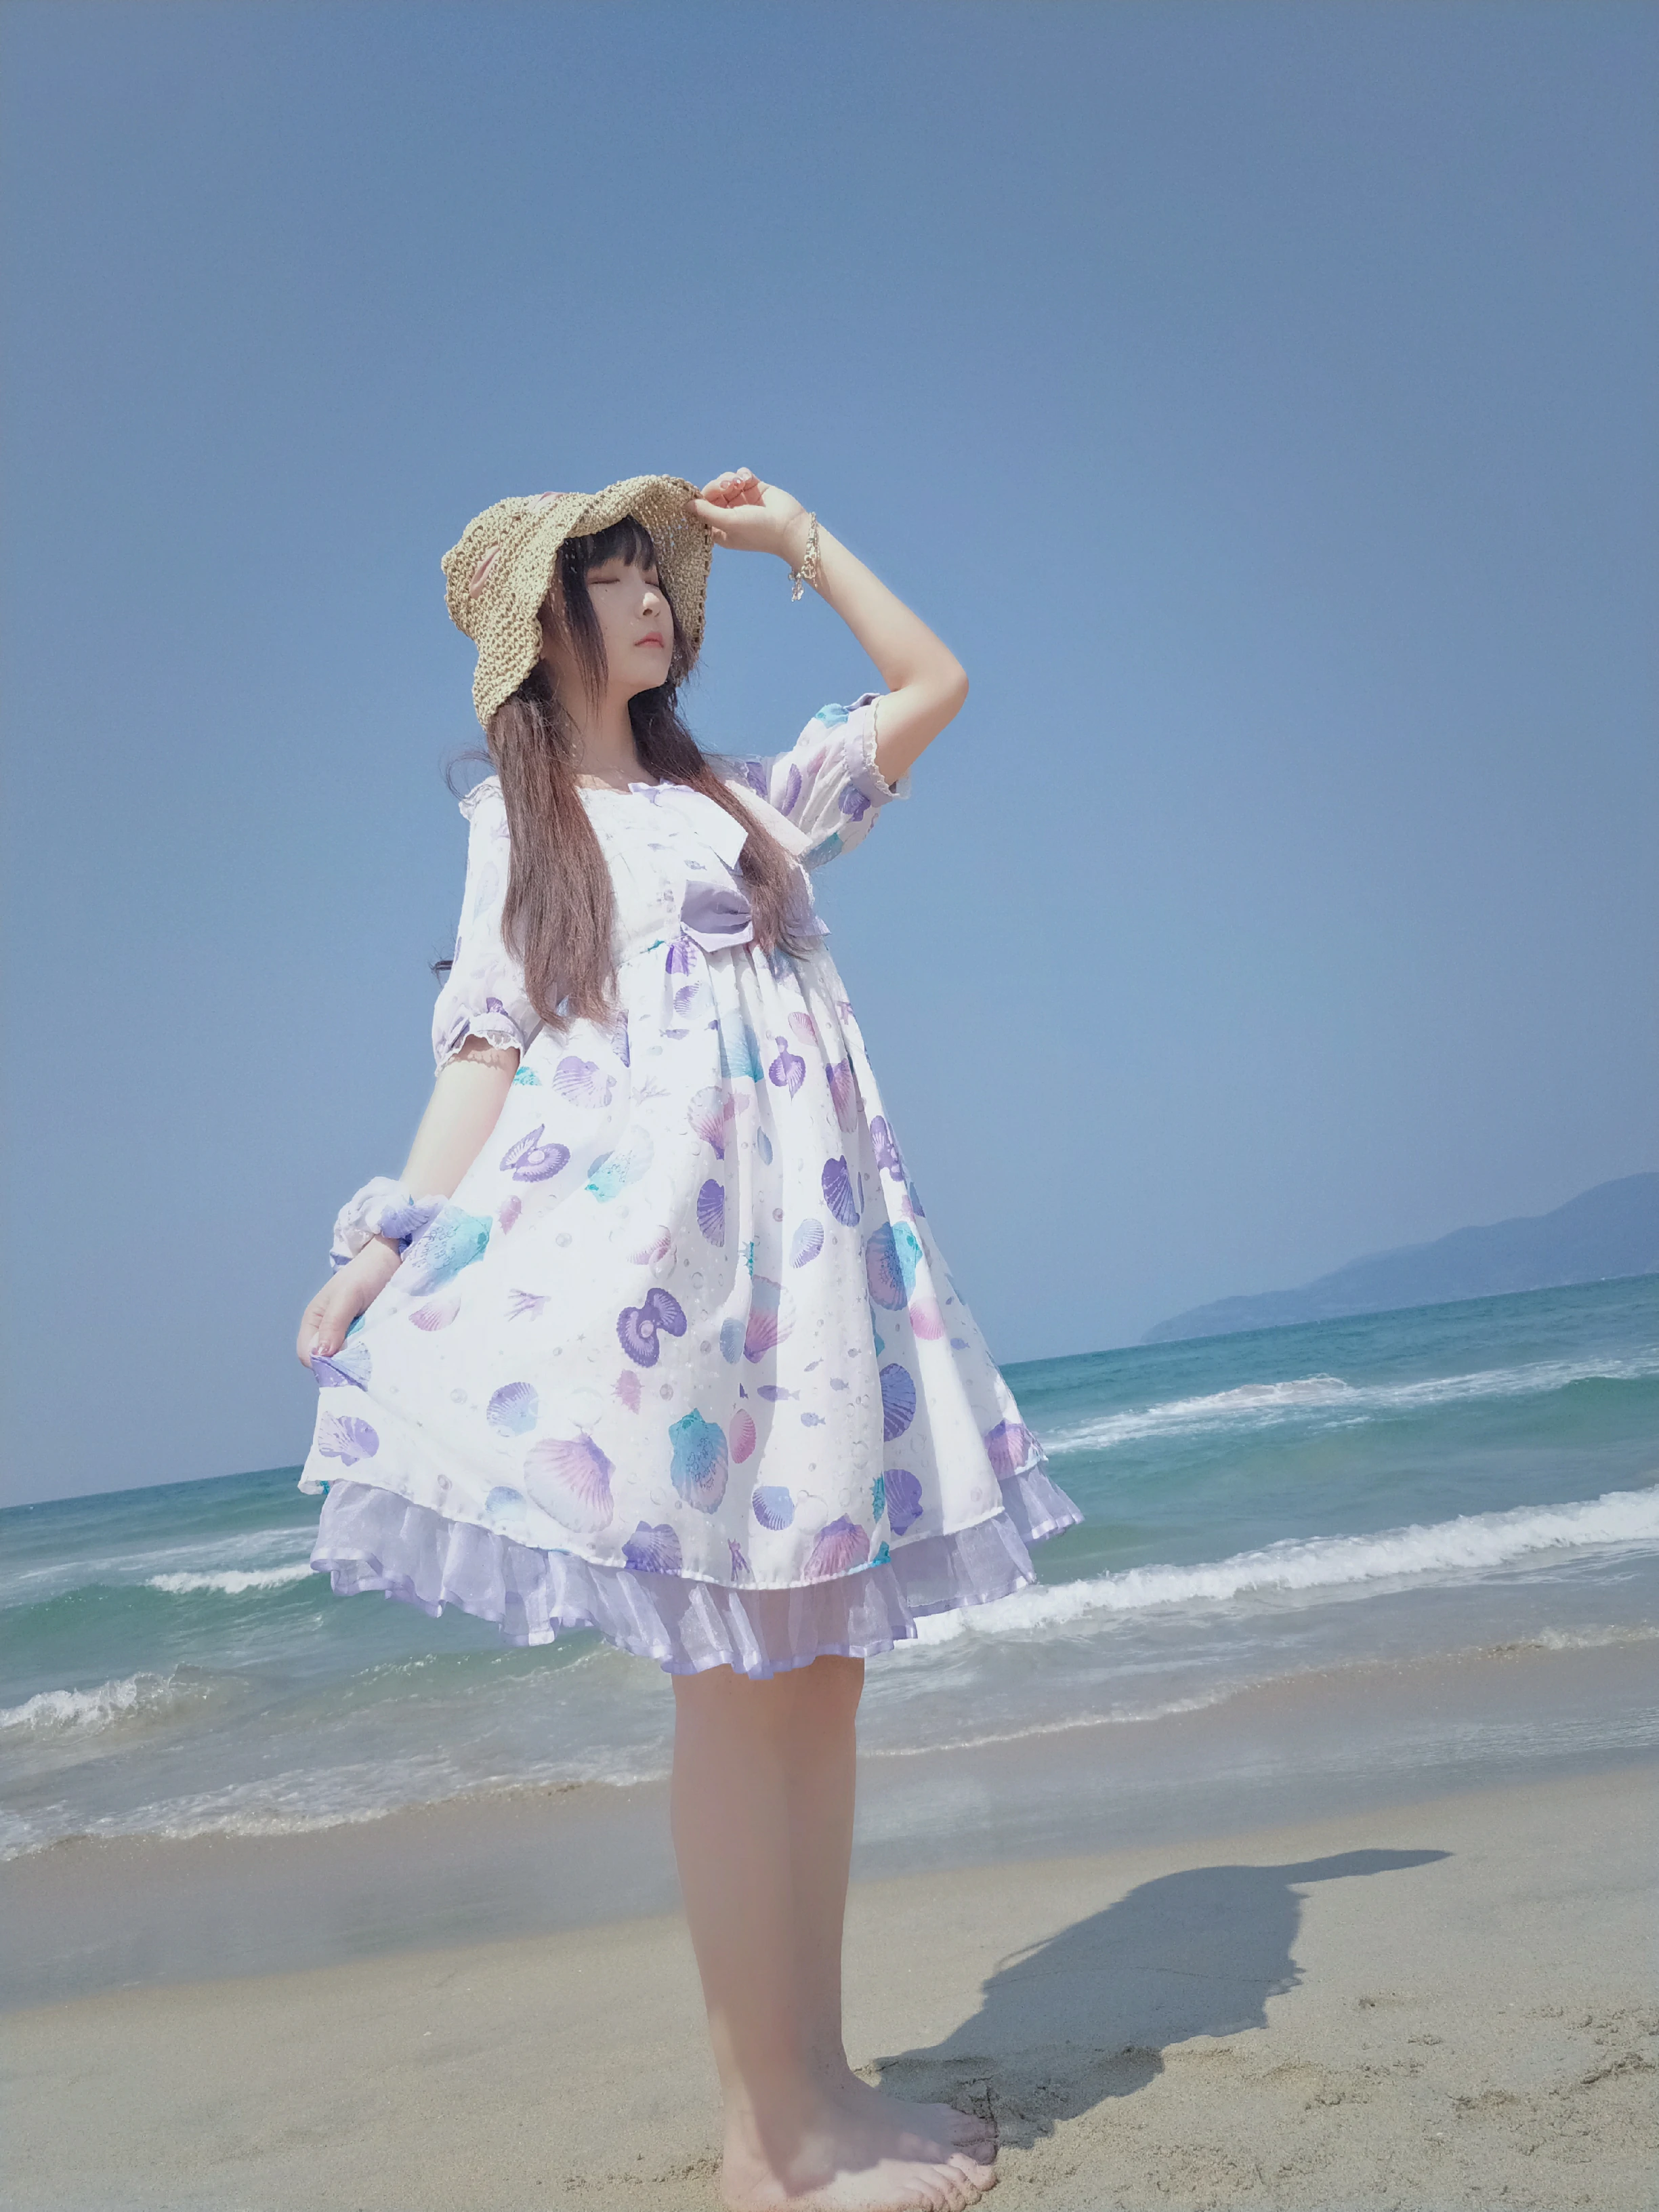 清纯少女 古川kagura 蓝色连身裙之沙滩写真,_20190207_181133